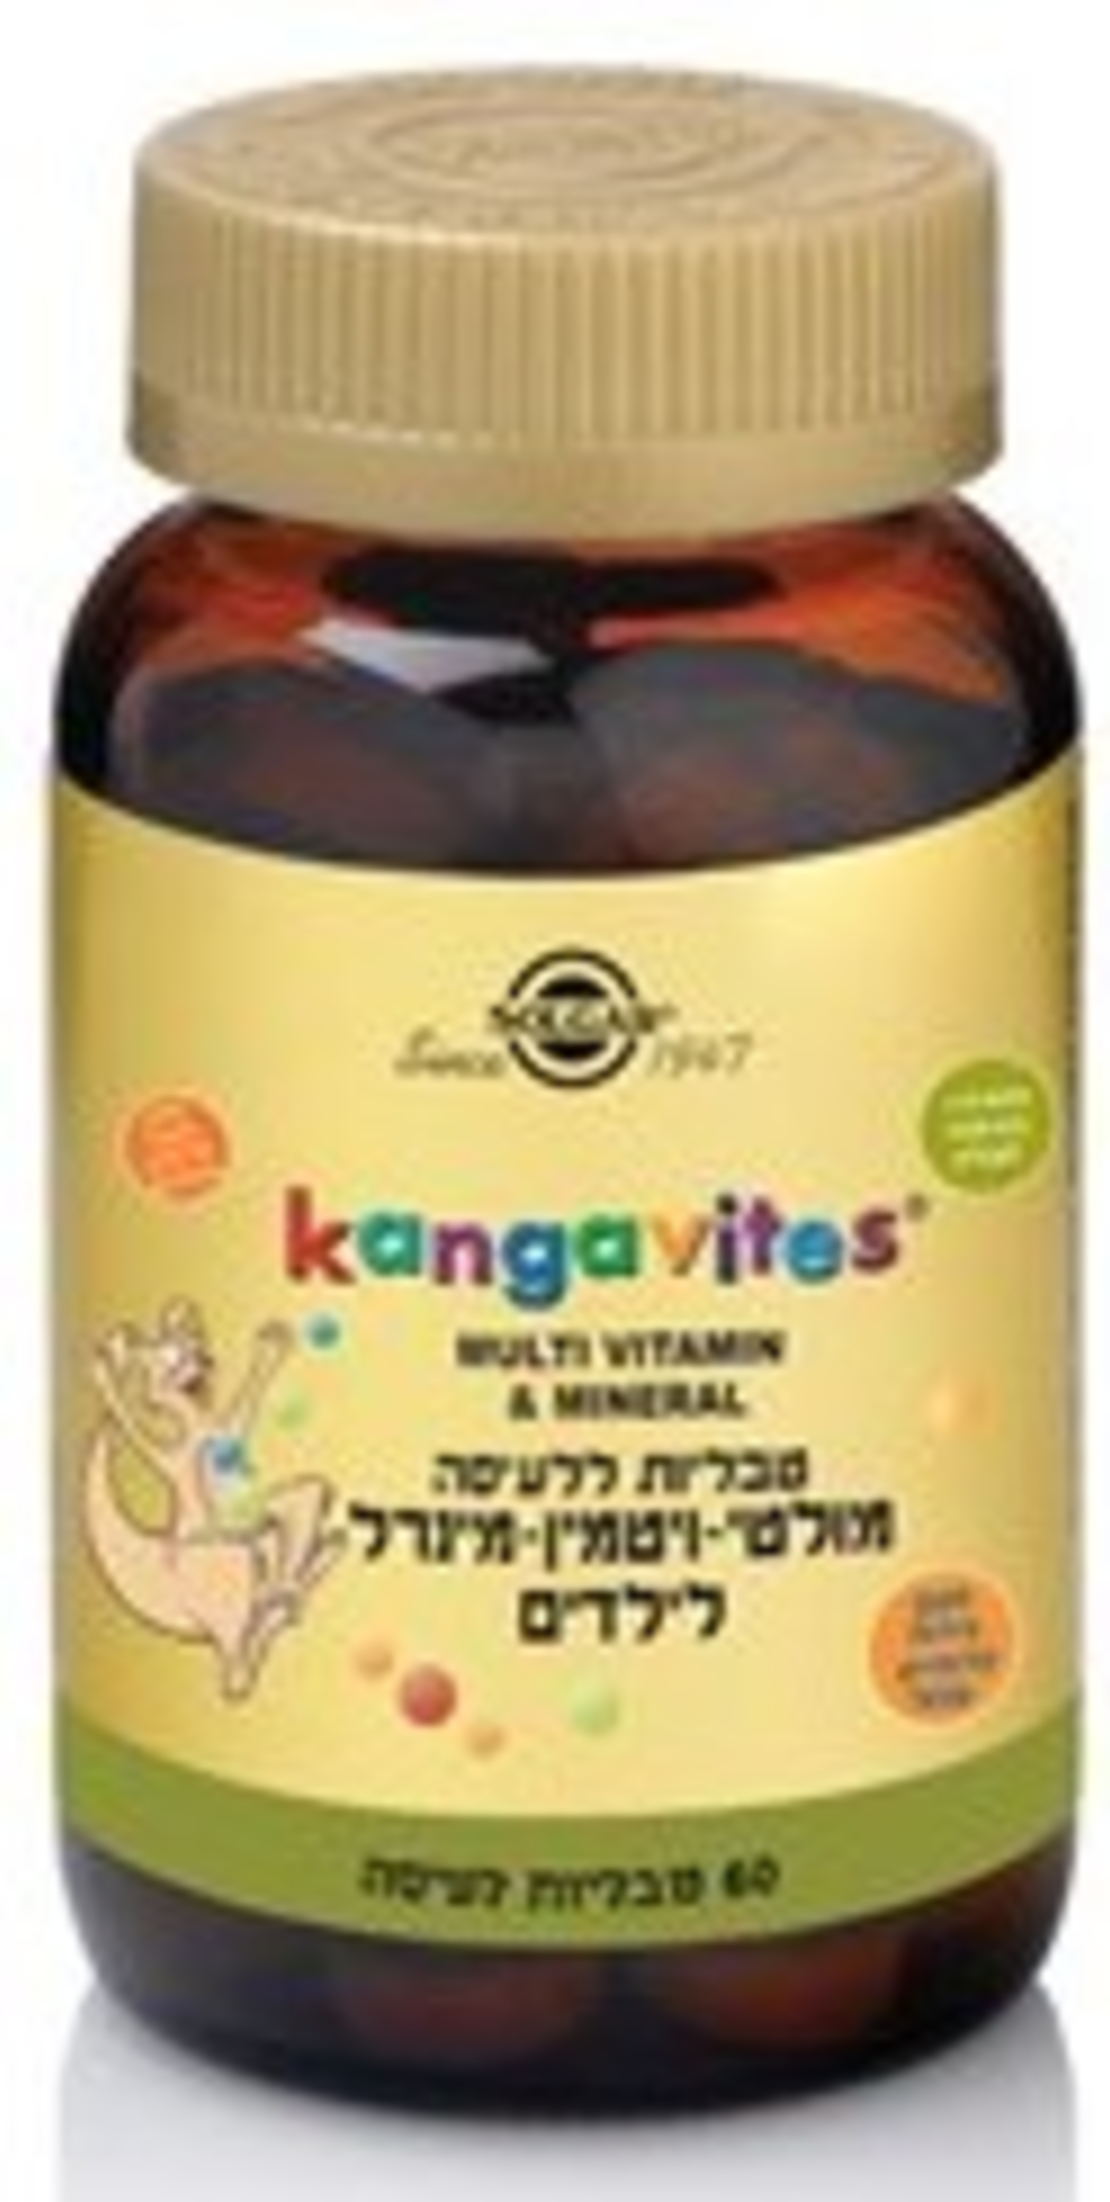 סולגאר - מולטי ויטמין-מינרל לעיסה לילדים Kangavites Multivitamin & Mineral 